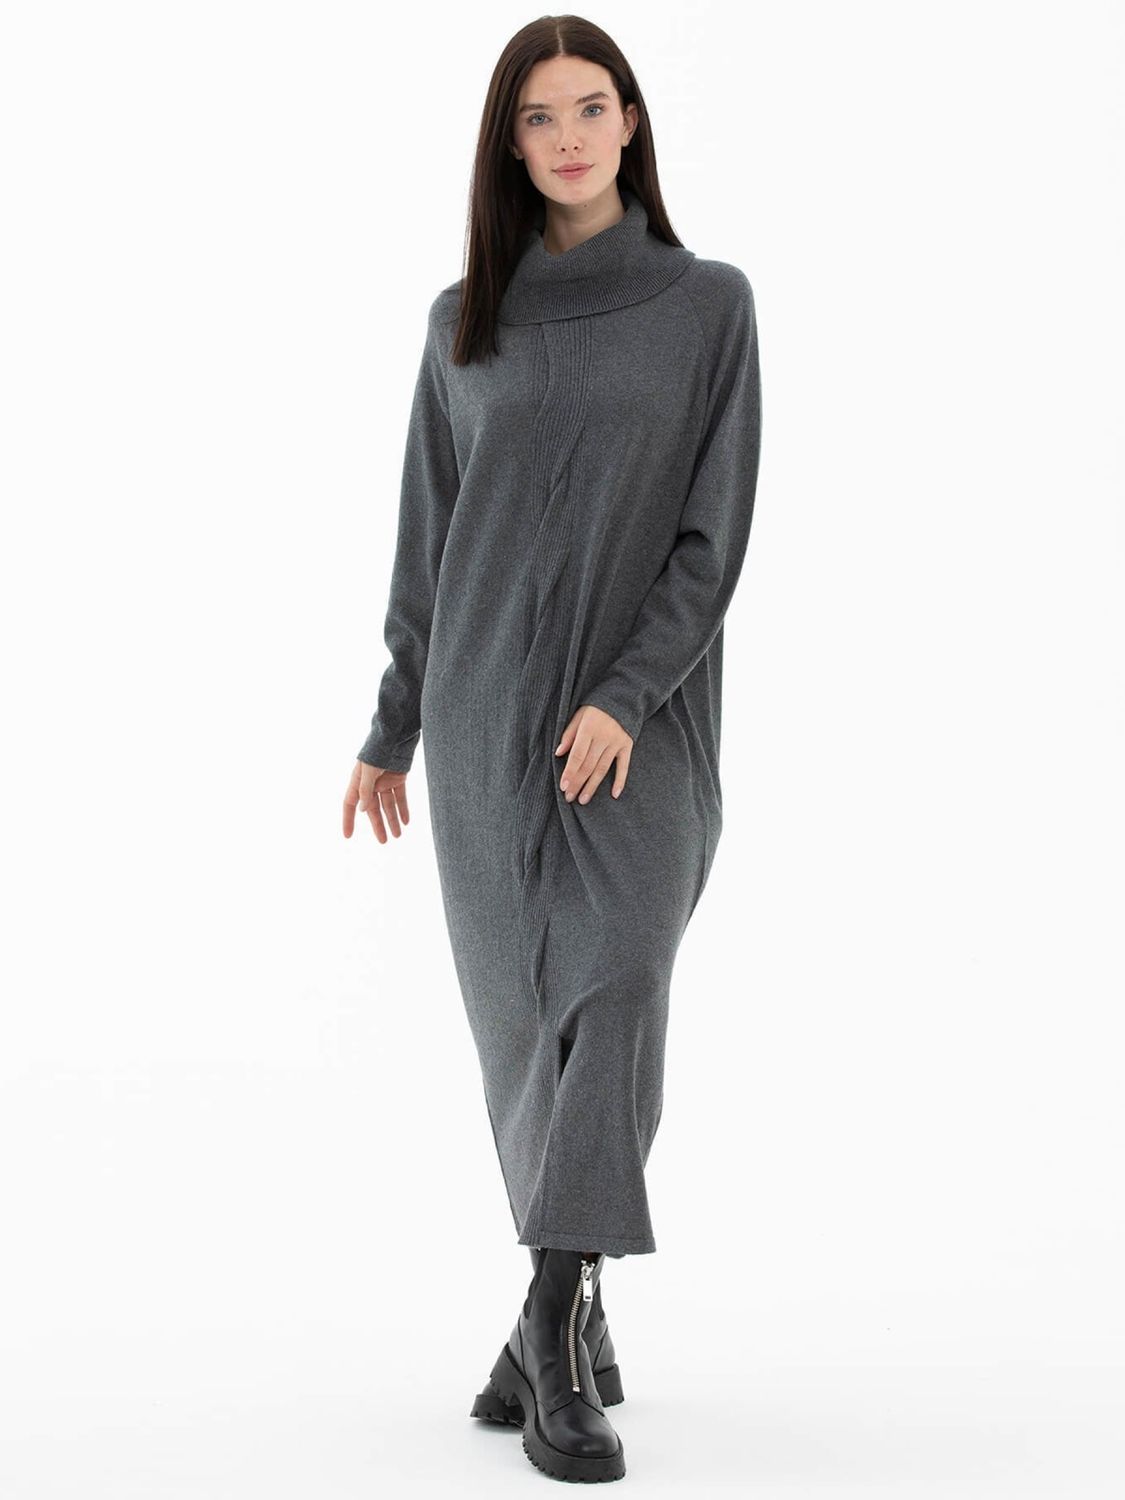 Теплое вязаное платье оверсайз серого цвета - фото